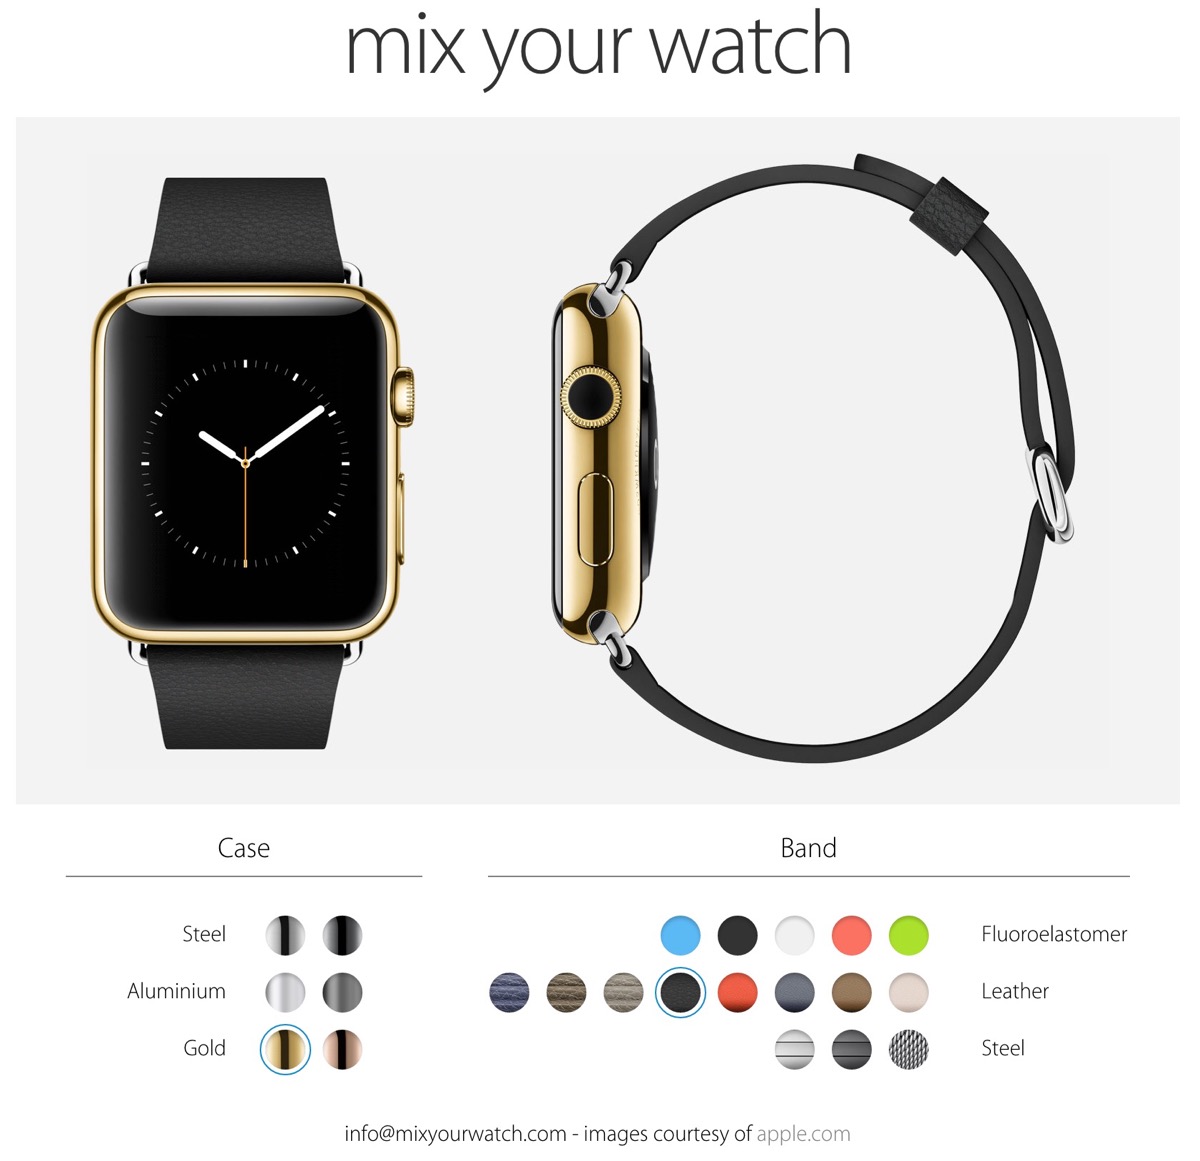 欲しい｢Apple Watch｣はどのモデル?? 各モデルとベルトの組み合わせを確認出来るサイトが登場